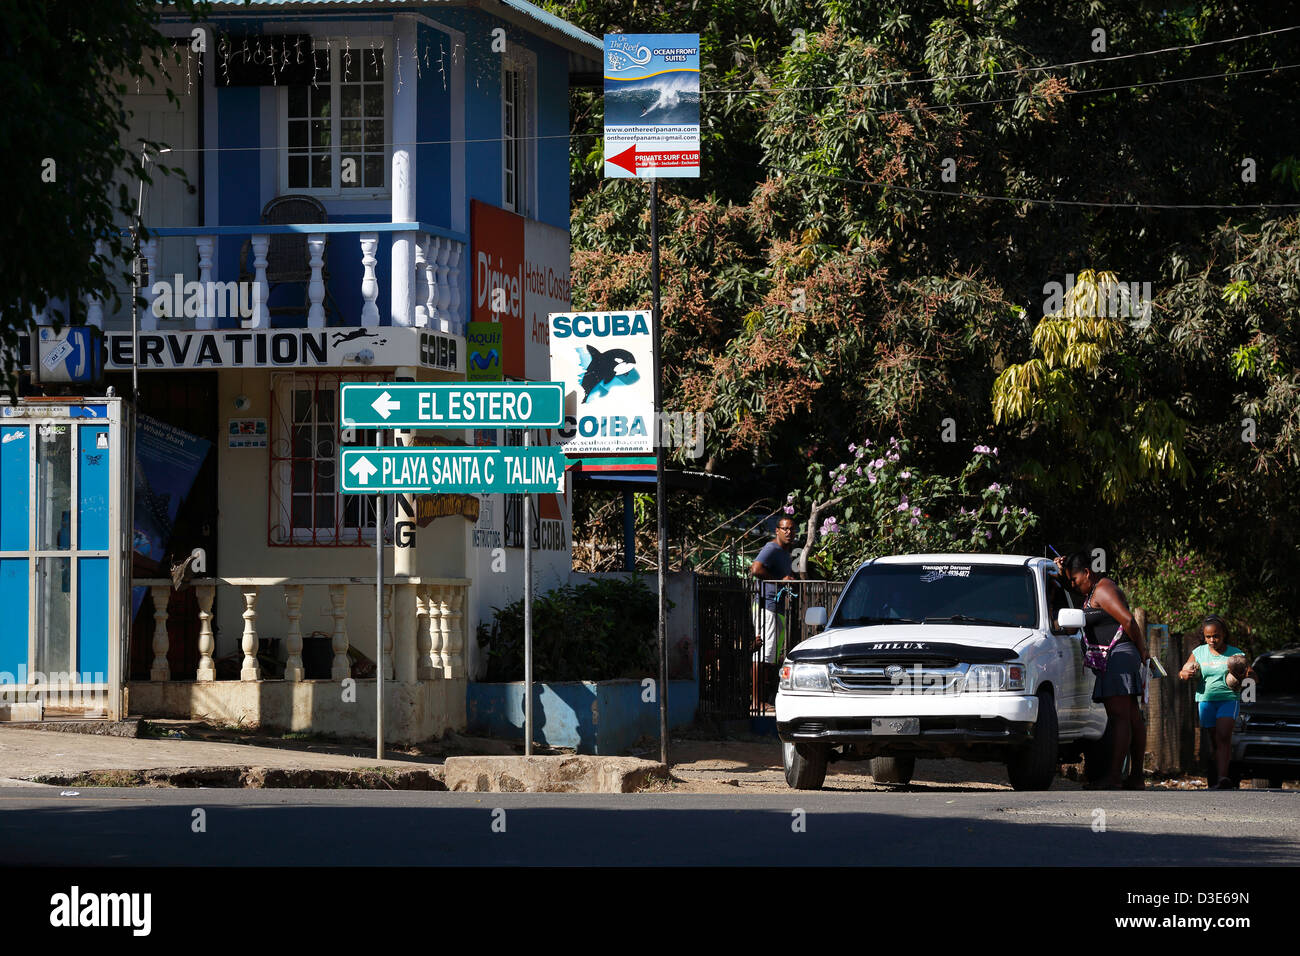 Ciudad pequeña escena callejera, Santa Catalina, Panamá Foto de stock